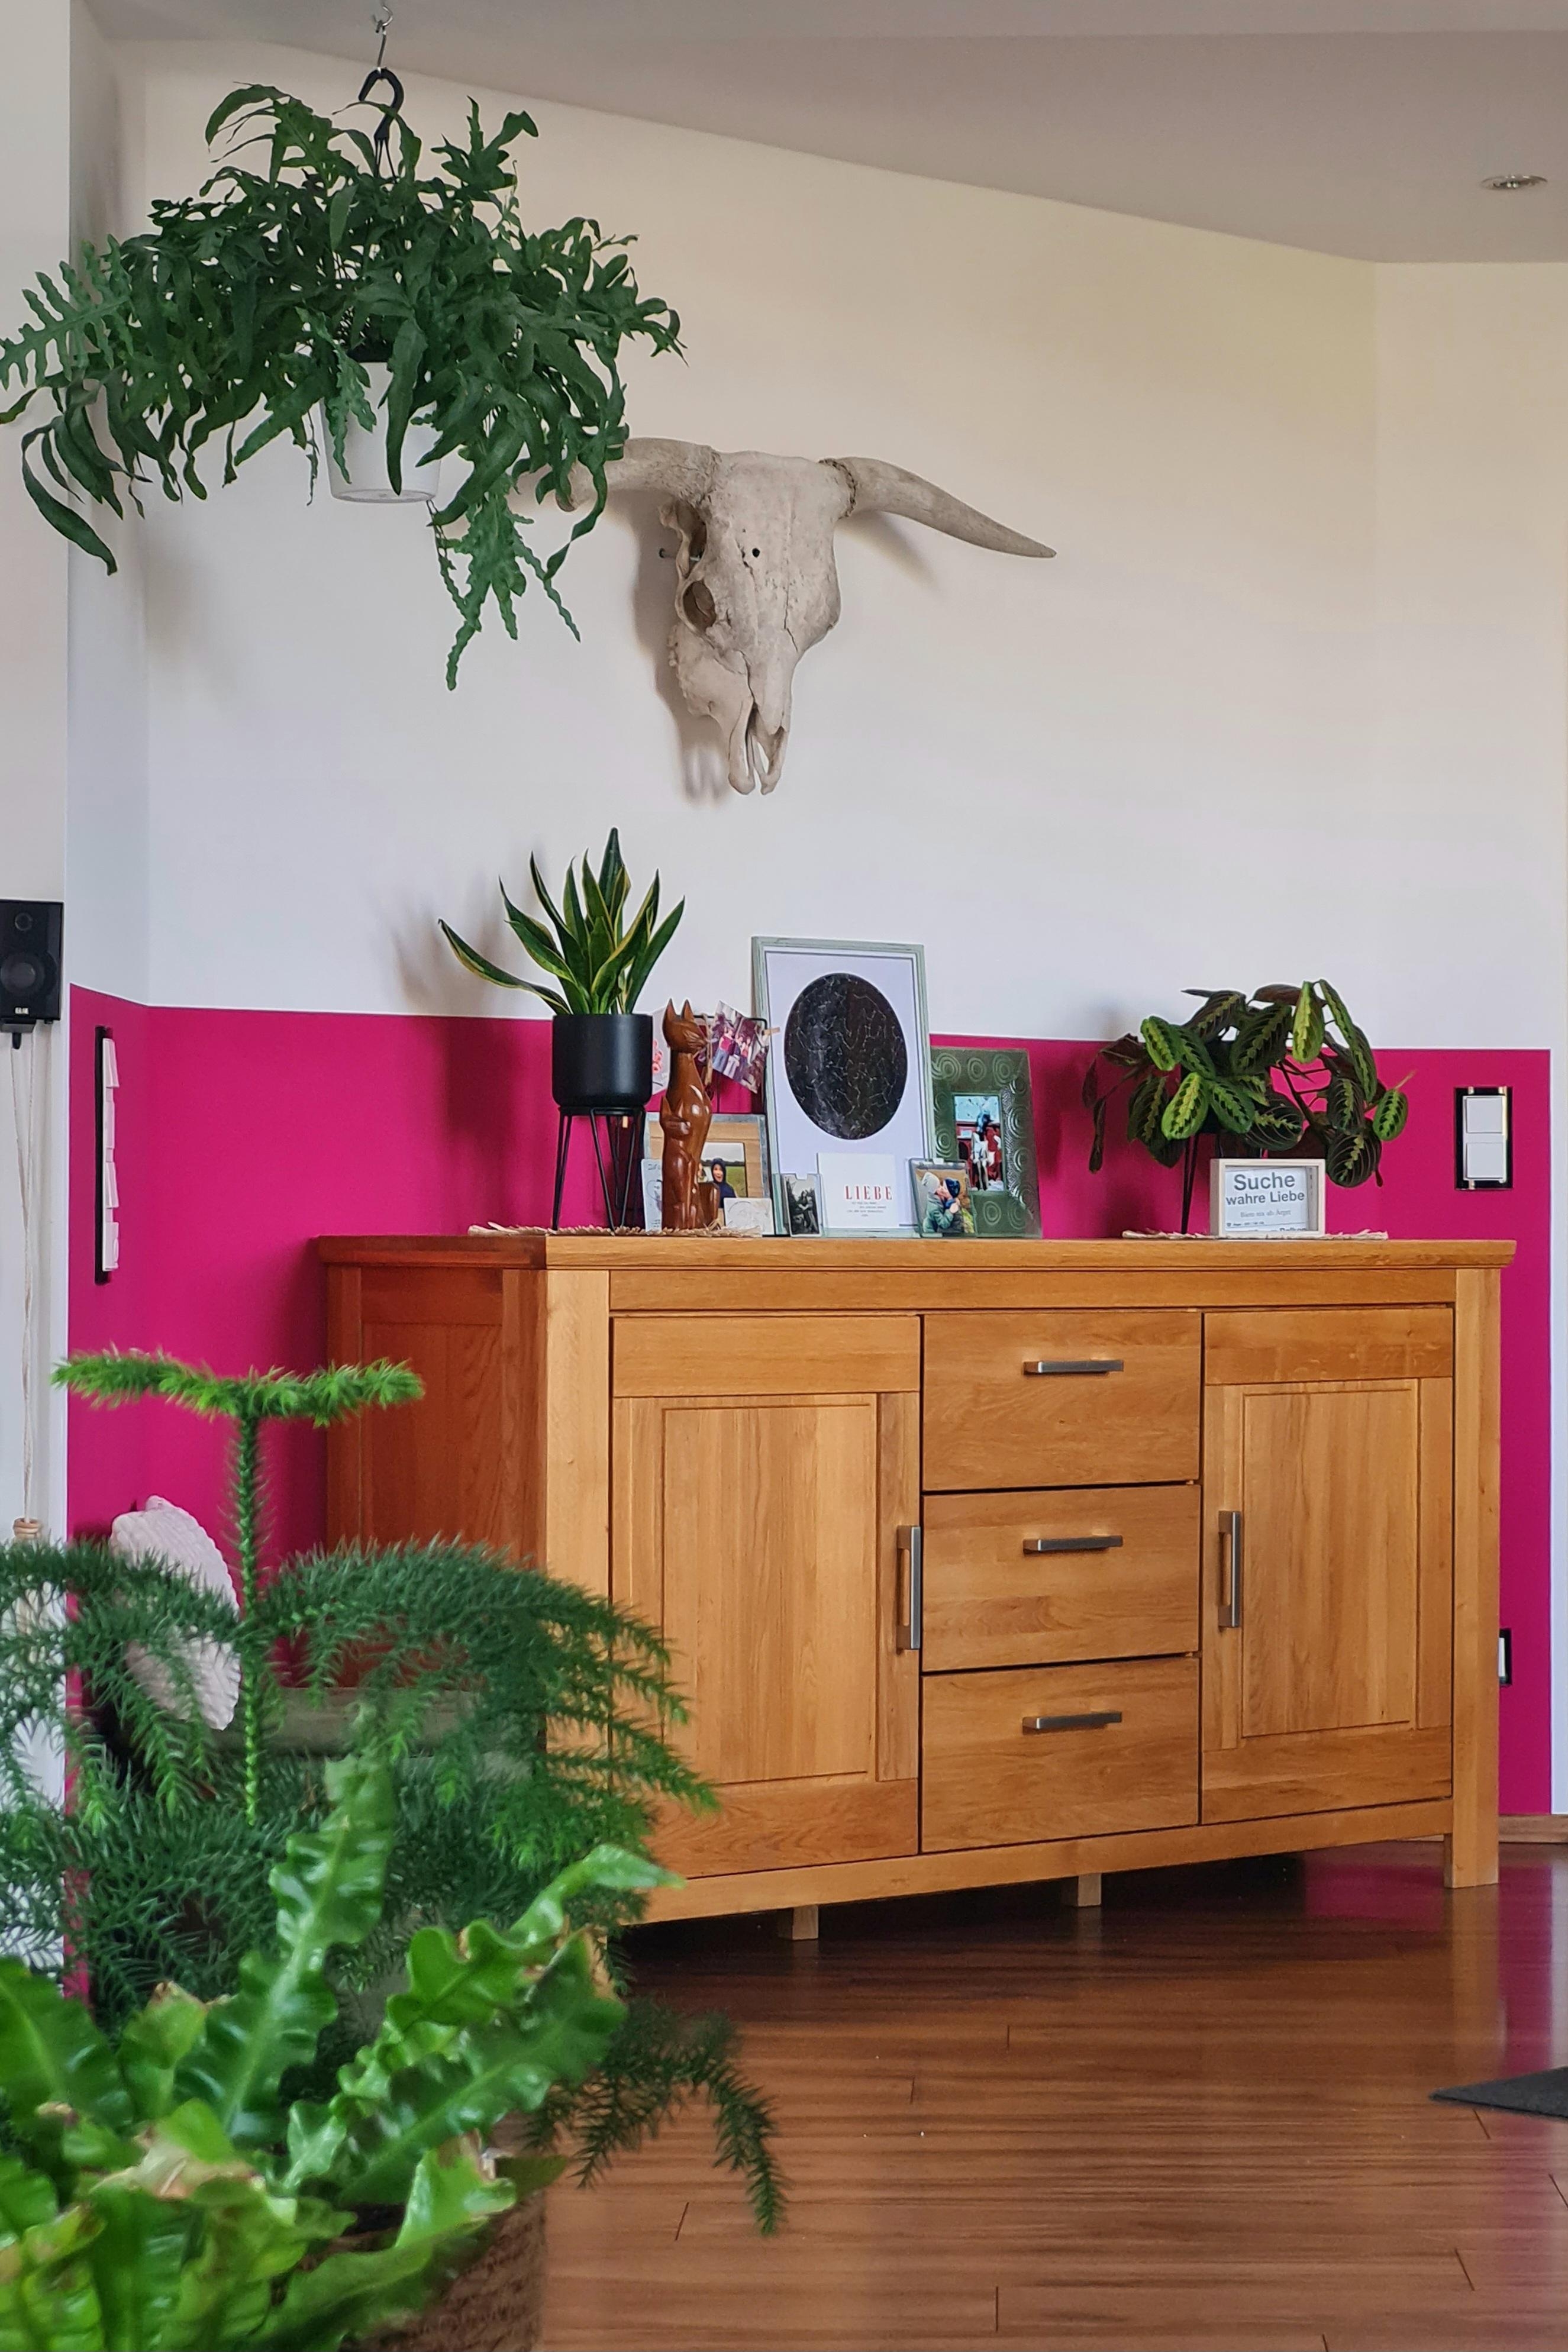 Mein farbenfrohes Esszimmer
#pink #Pflanzen #COUCHstyle #couchliebt #Esszimmer #Kommode 